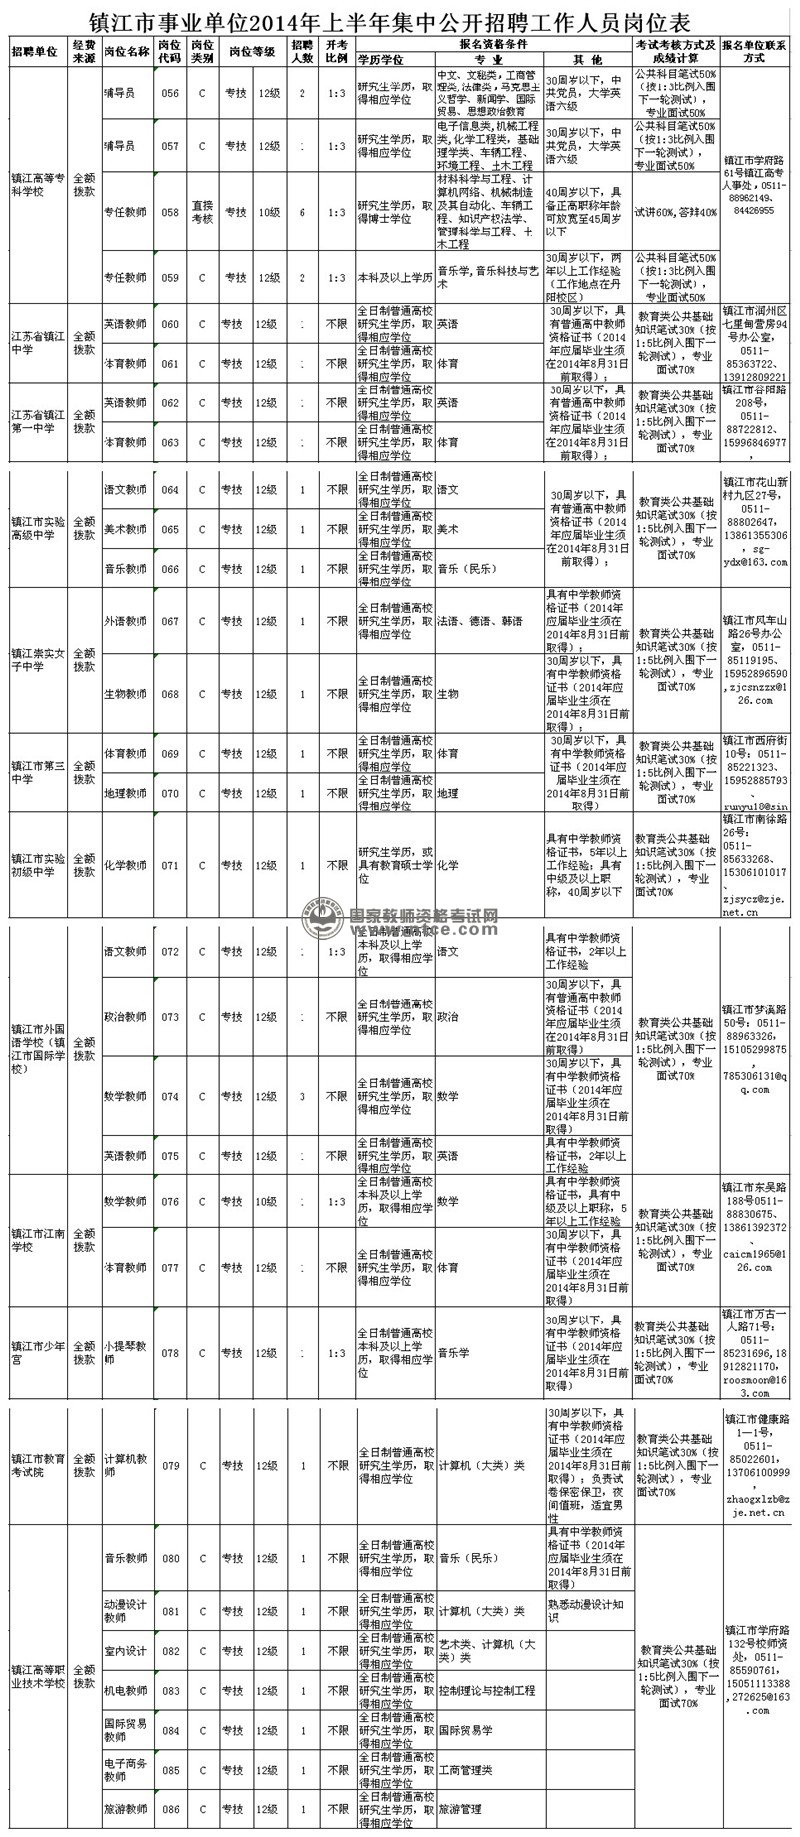 镇江市事业单位2014年上半年集中公开招聘岗位表